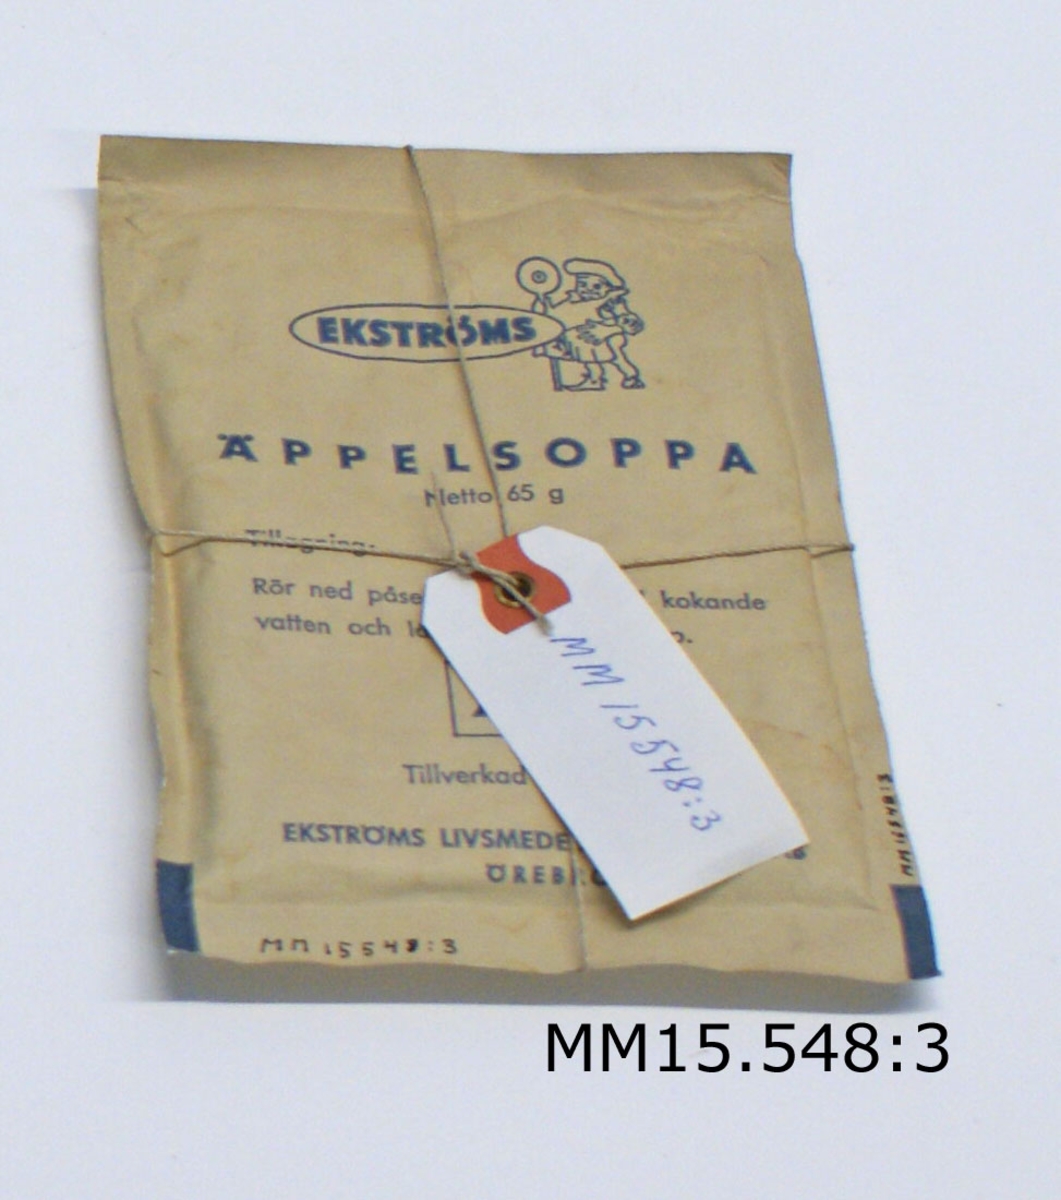 Torrförpackning, snabbdryck äppelsoppa 65 g. Rektangulära påsar med torrförpackat livsmedel av Ekströms Livsmedelsprodukter AB, Örebro, tillverkning.